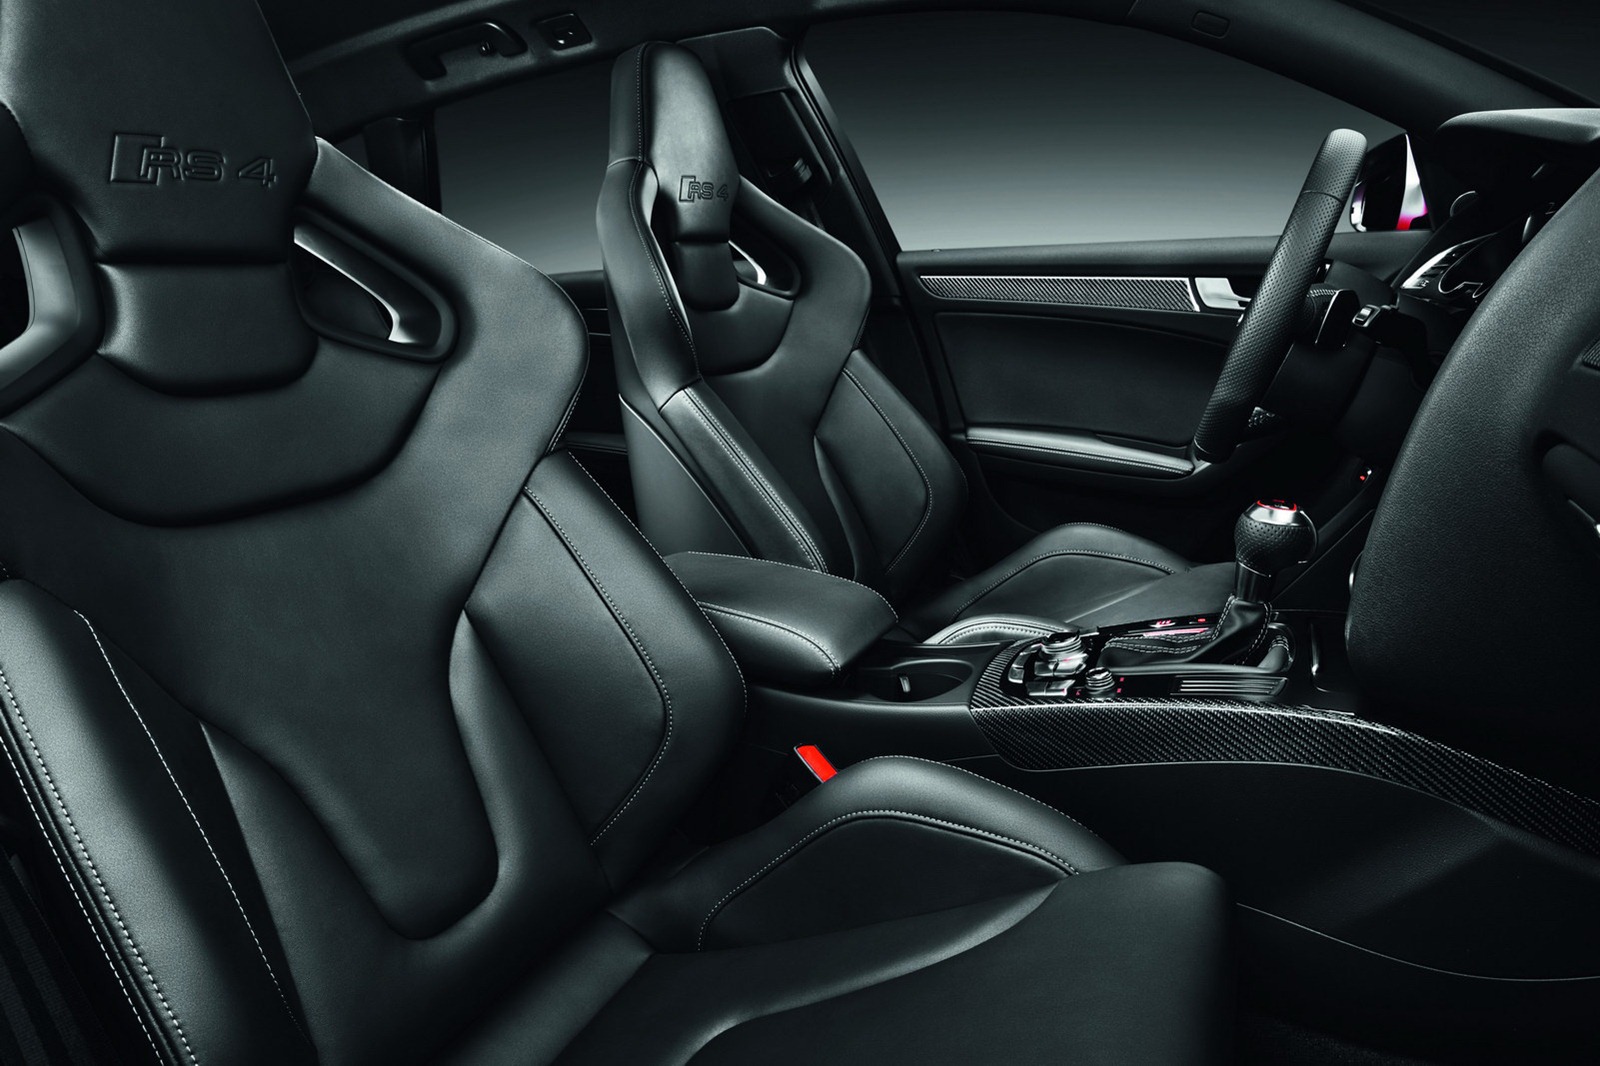 Nuova Audi RS4 Avant immagini ufficiali e dati tecnici